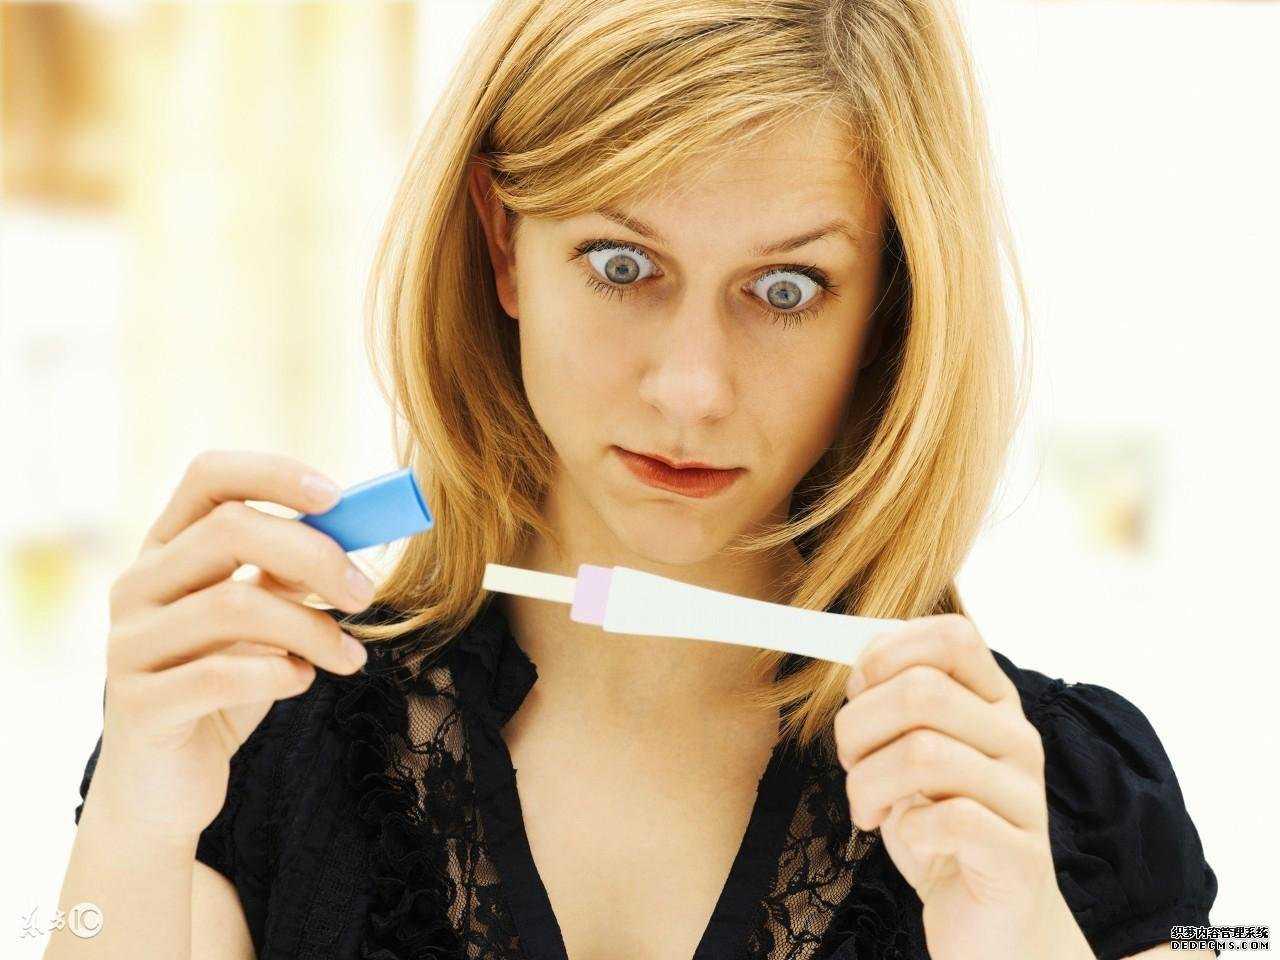 备孕时排卵试纸总是测不到强阳，这是怎么回事呢？难道是不排卵吗